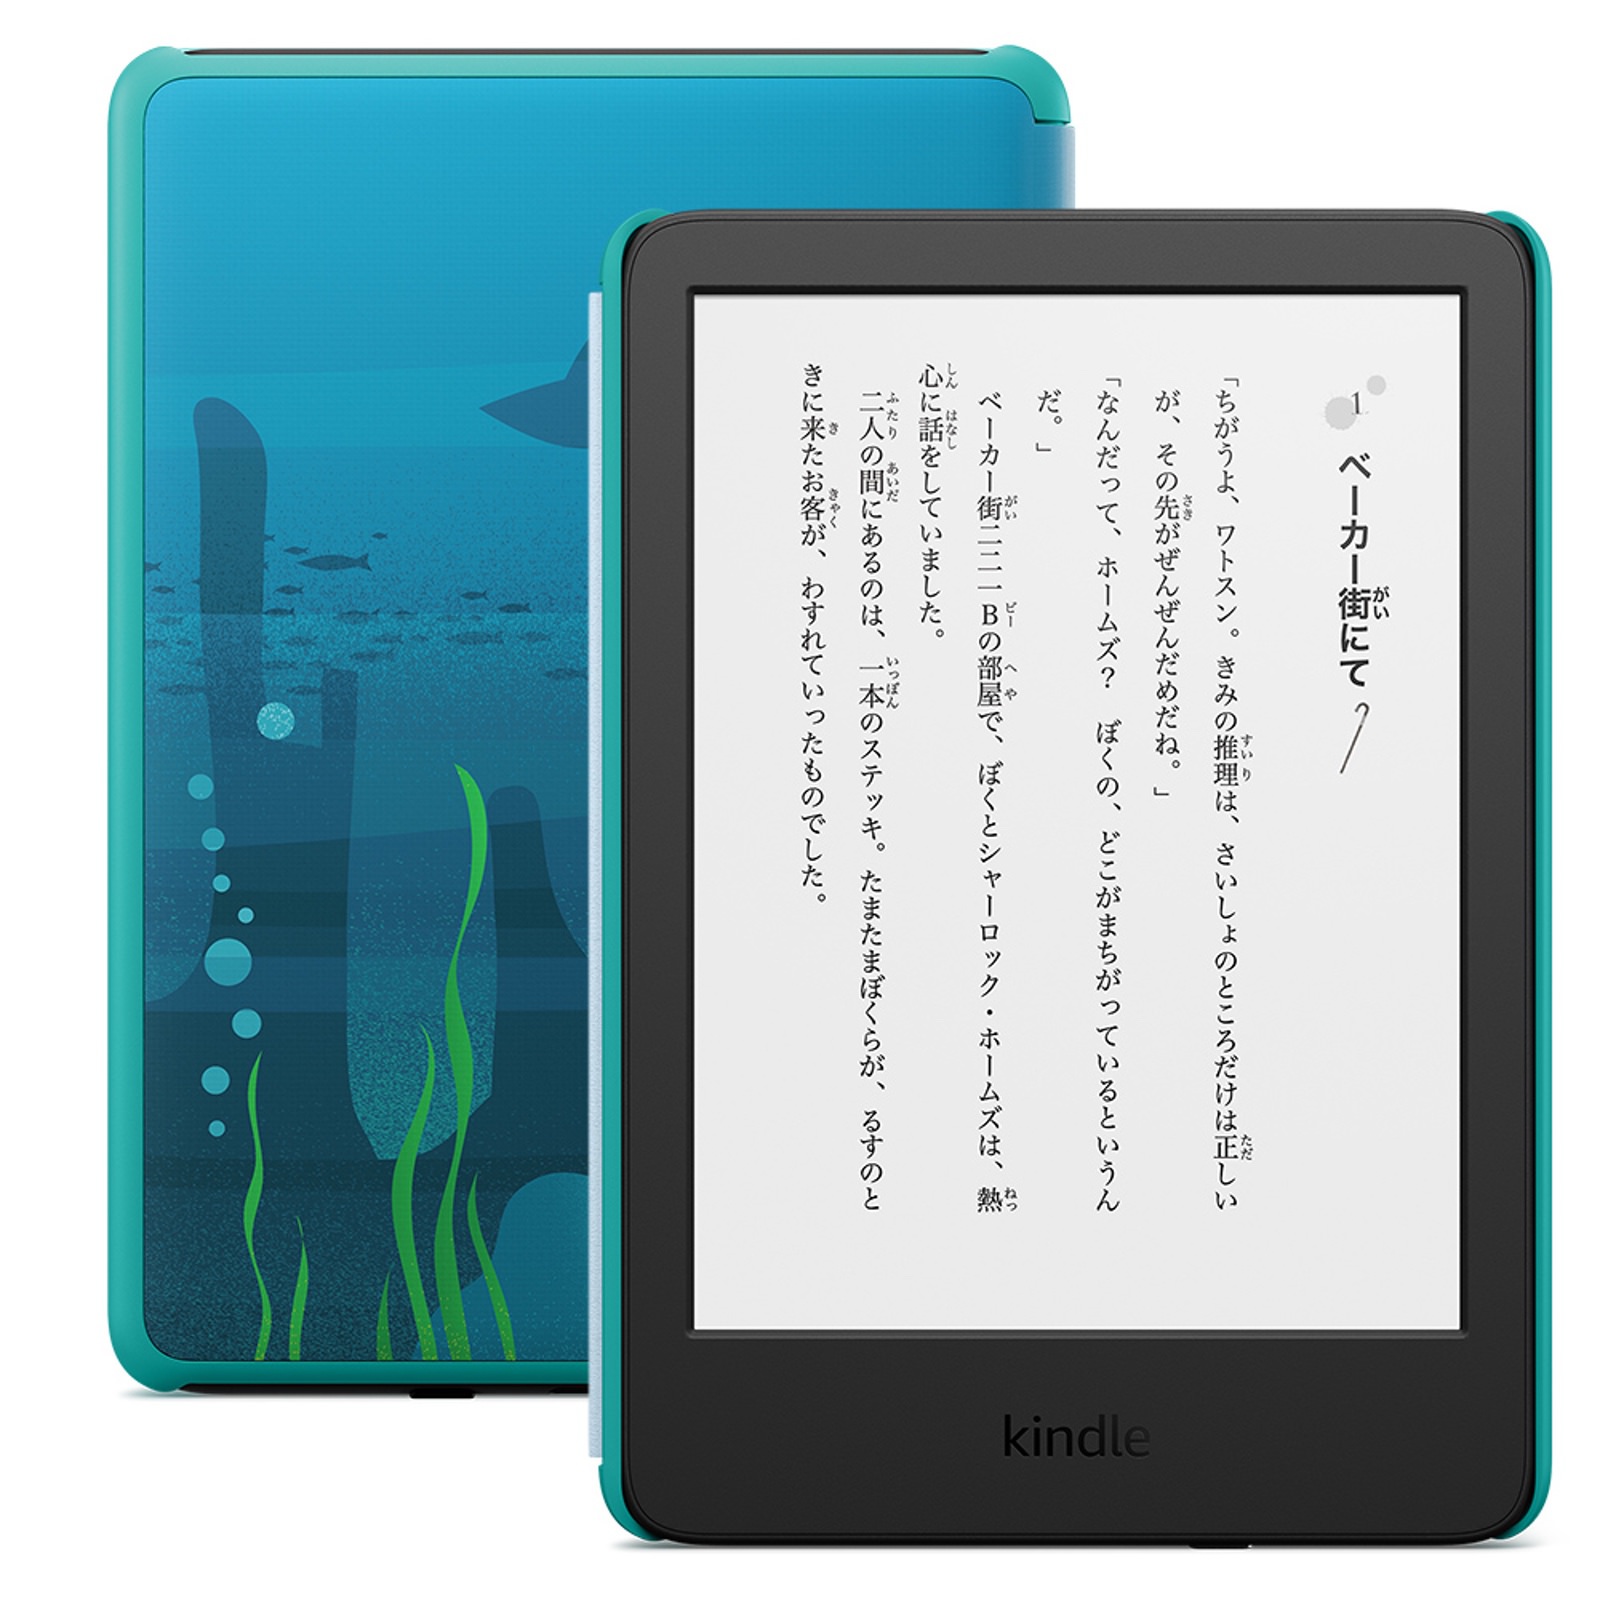 New-Kindle-and-KindleKidsModel-from-Amazon-03.jpg